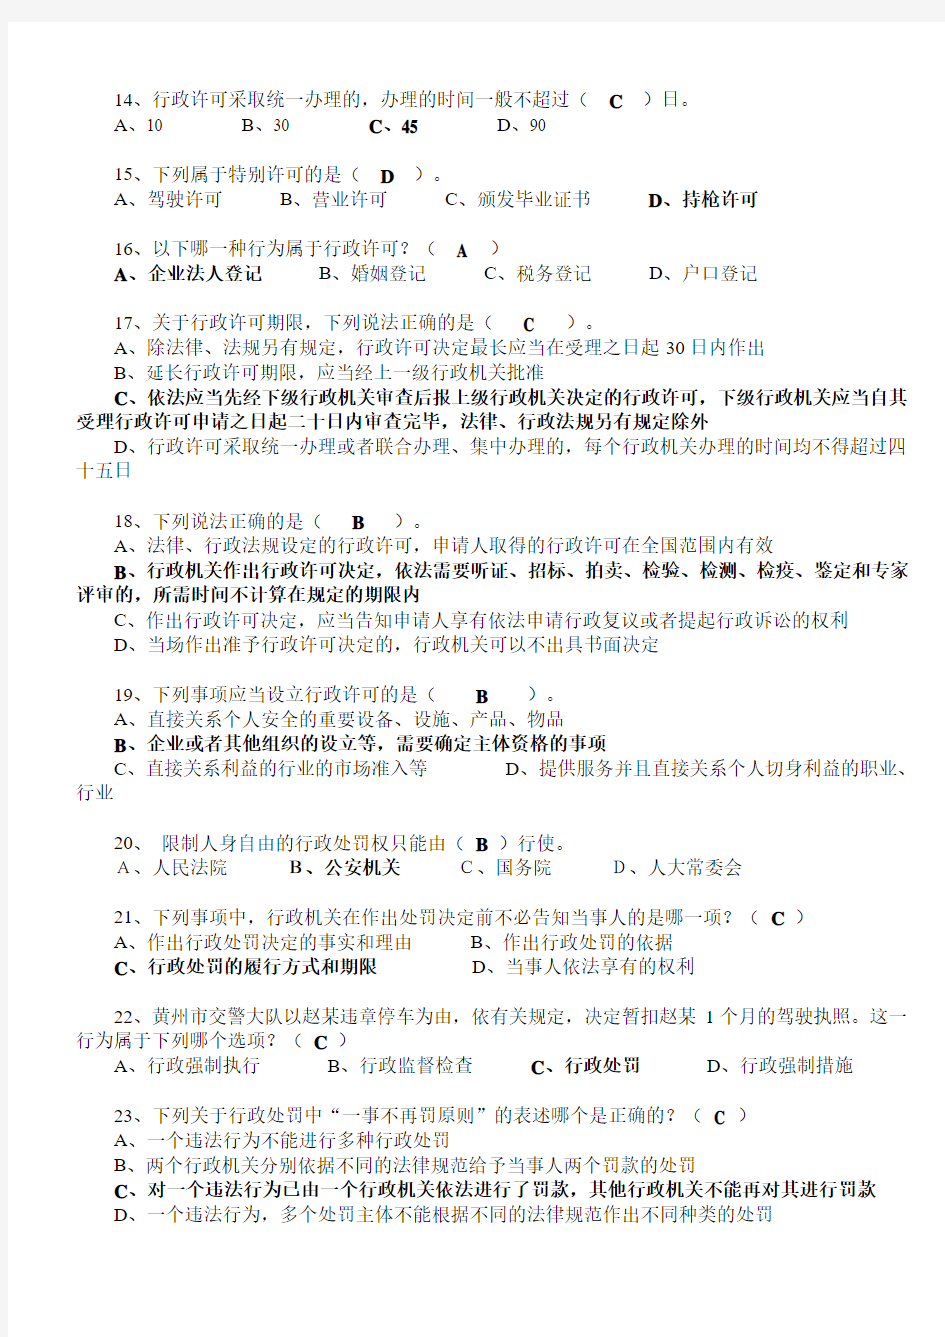 2012福建省《行政强制法》学习平台培训班考试题库(打印版)